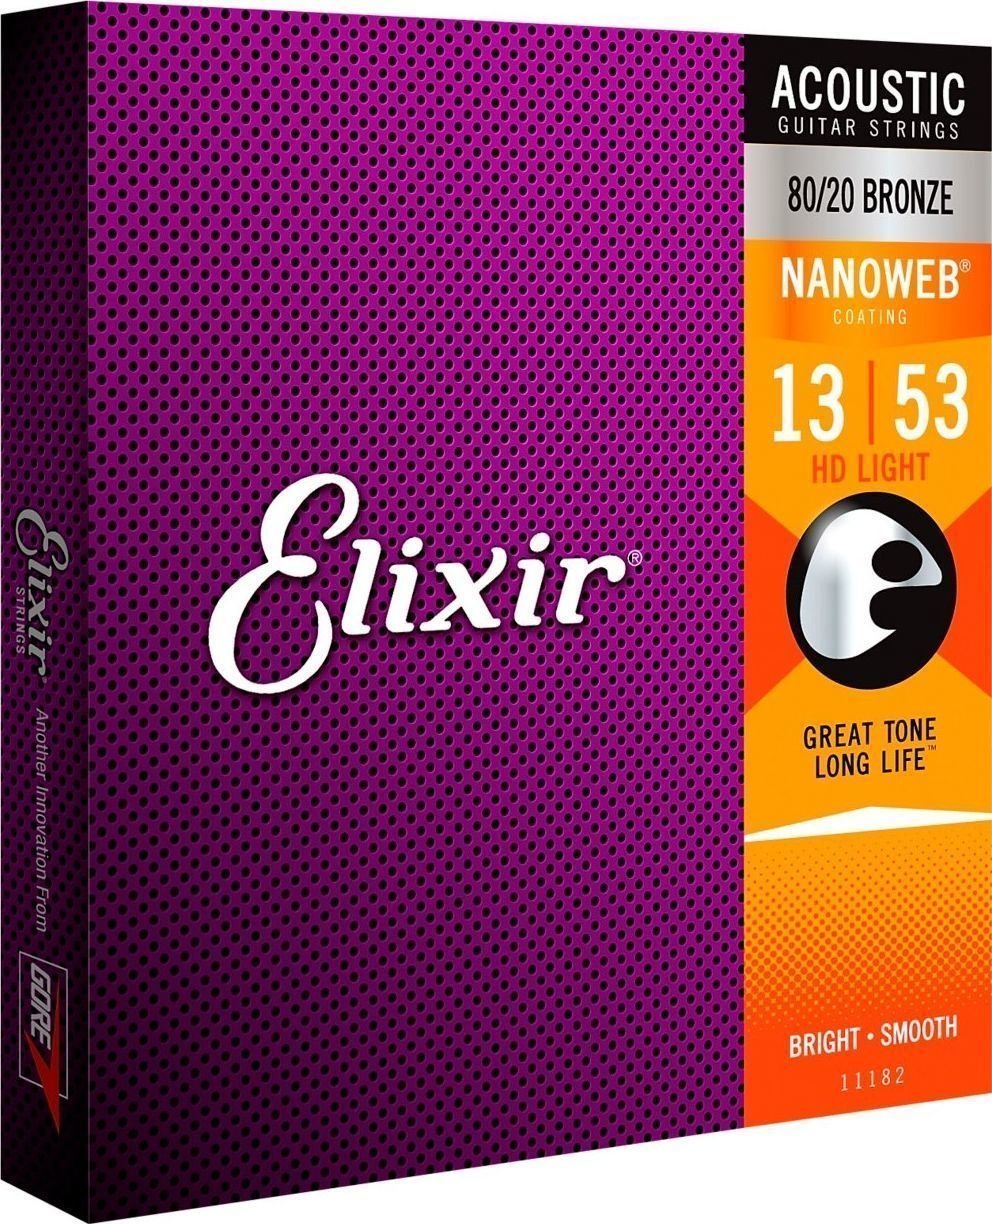 Cordas de guitarra Elixir 11182 Nanoweb 13-53